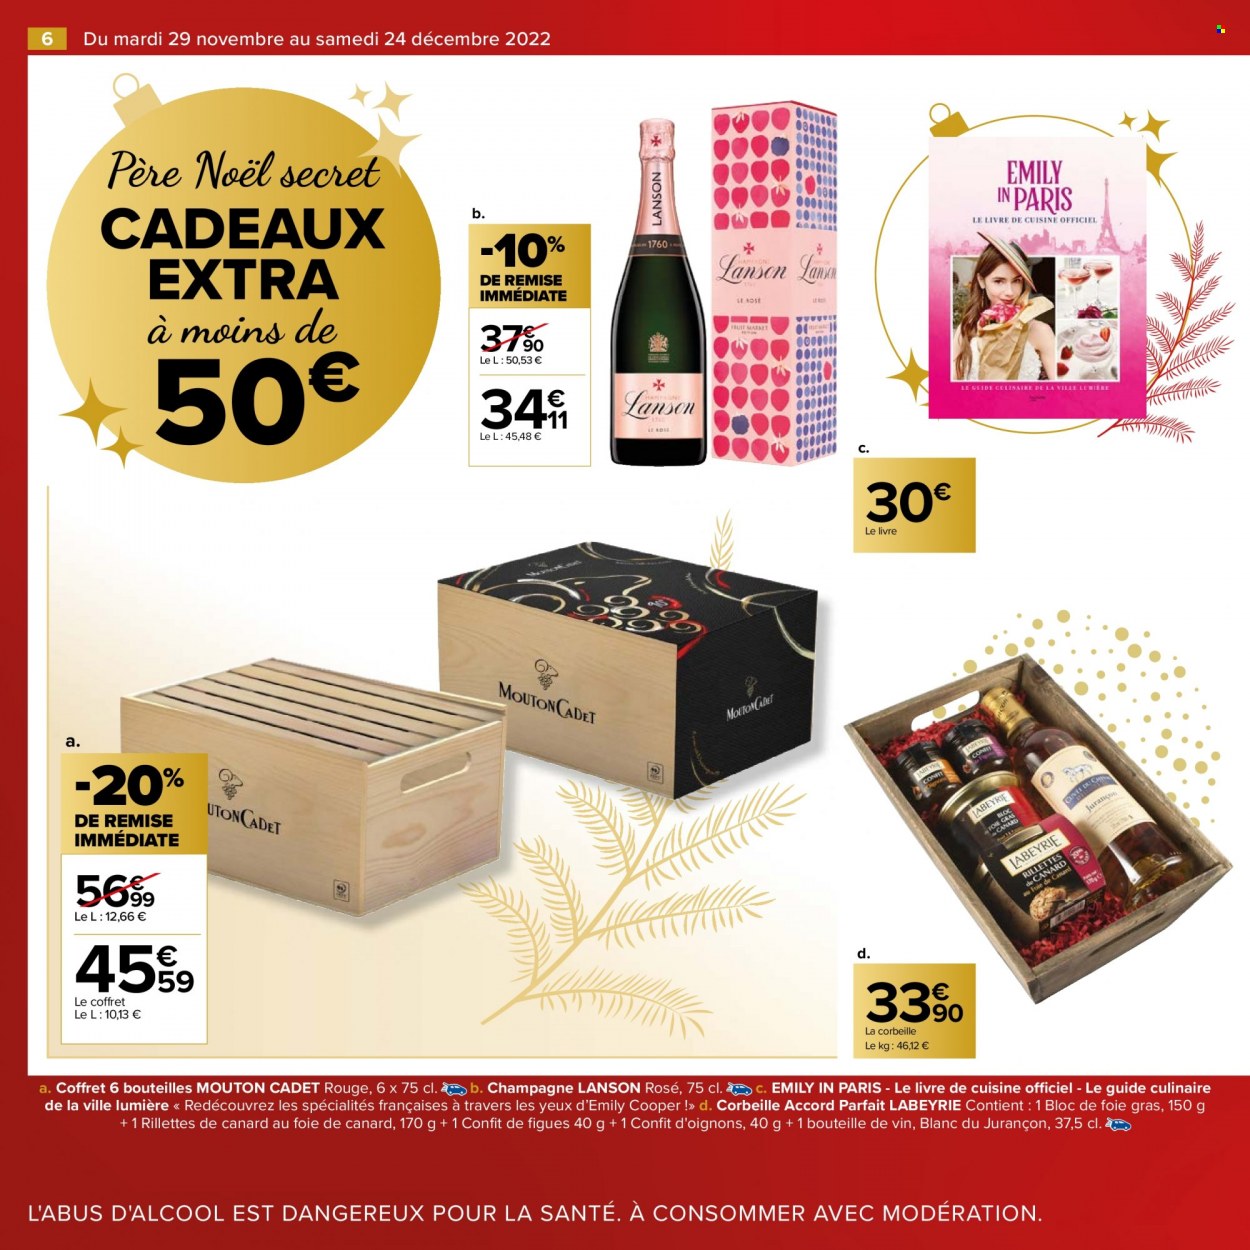 thumbnail - Catalogue Carrefour Hypermarchés - 29/11/2022 - 24/12/2022 - Produits soldés - oignons, Labeyrie, rillettes, rillettes de canard, père noël, champagne, corbeille, livre. Page 6.